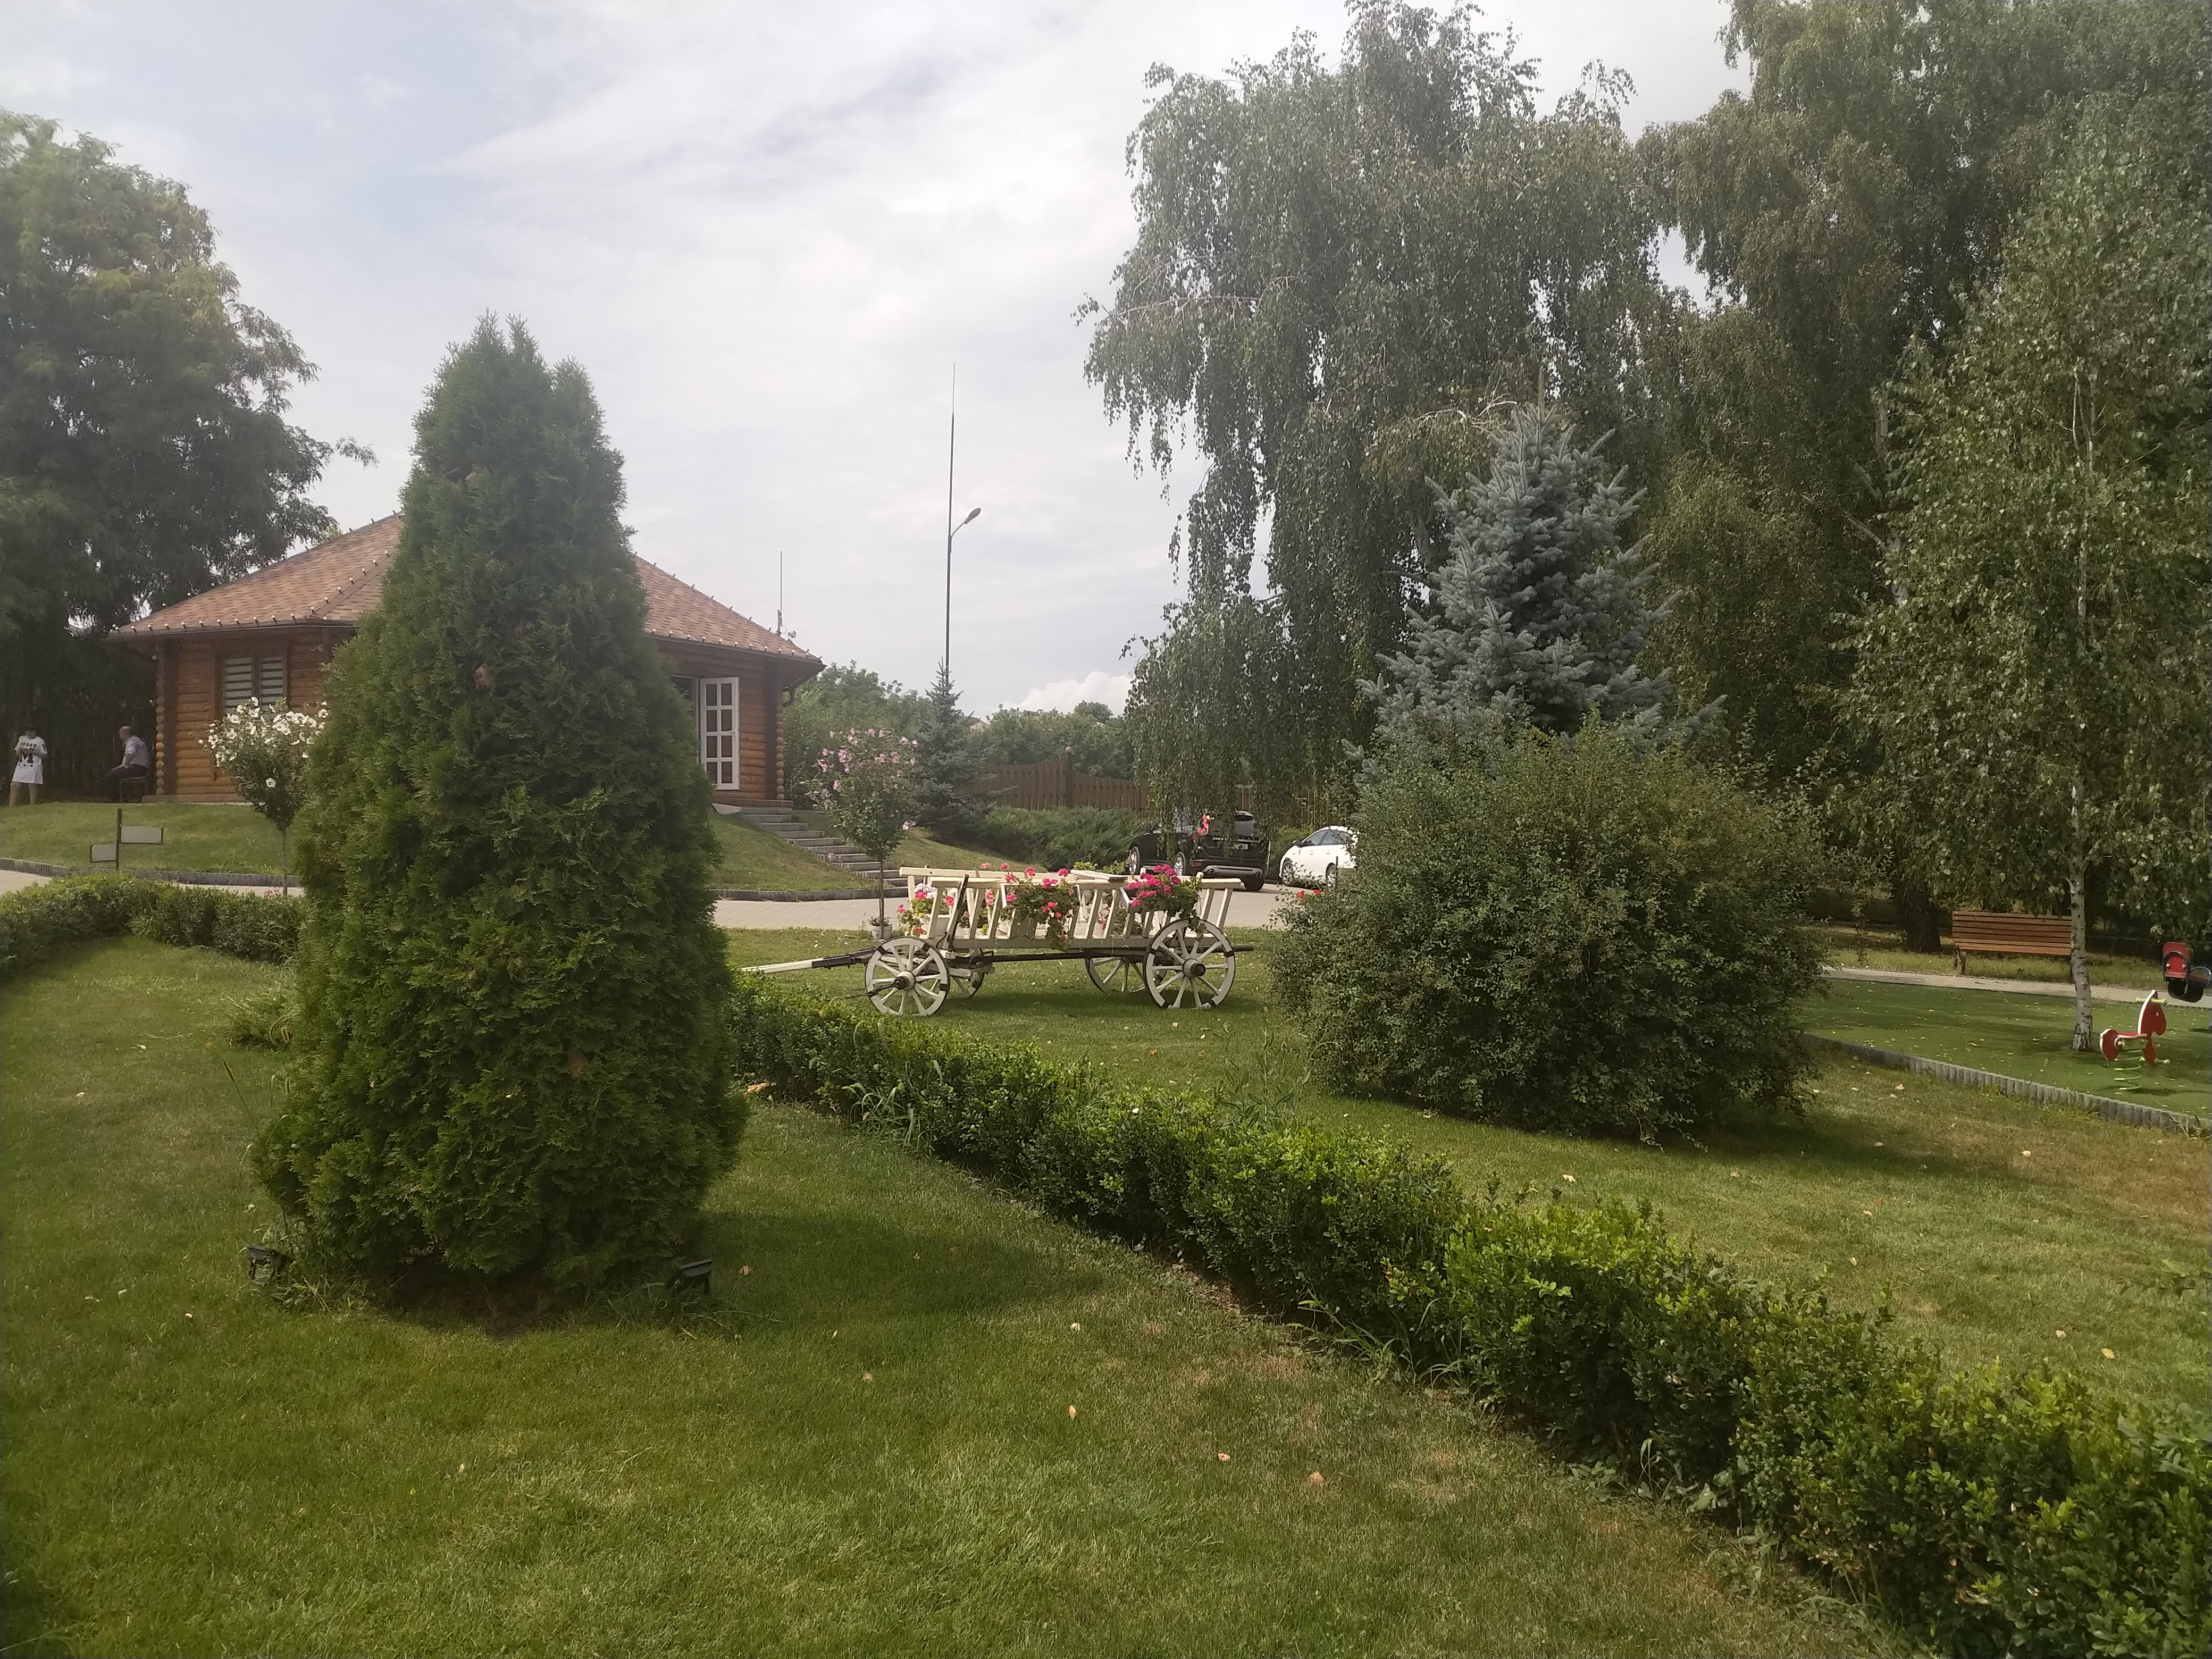 MD, Raionul Criuleni, Satul Măgdăceşti, Căruță decorativă la International Park